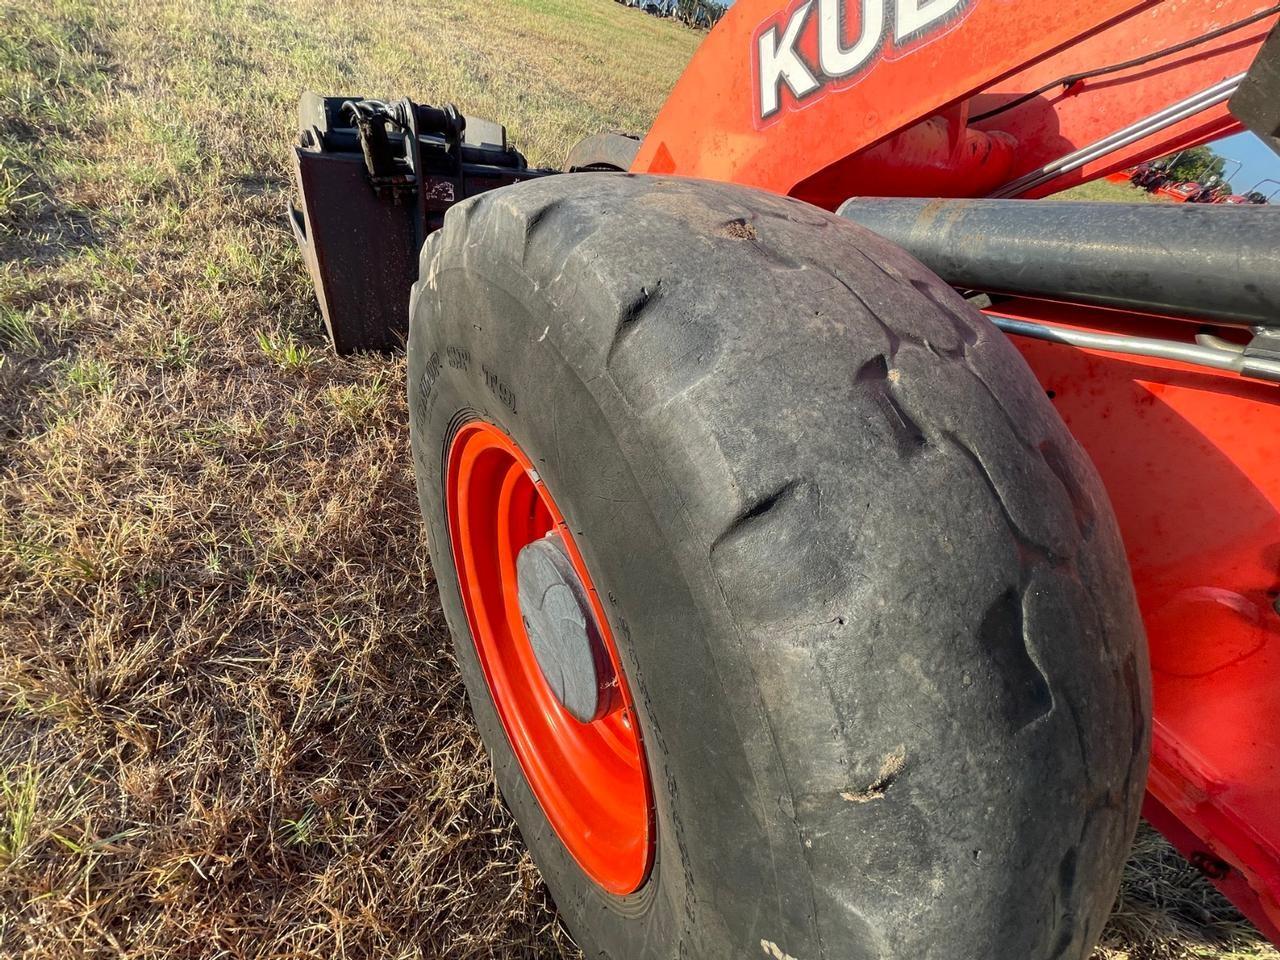 2015 Kubota R530R41 Wheel Loader